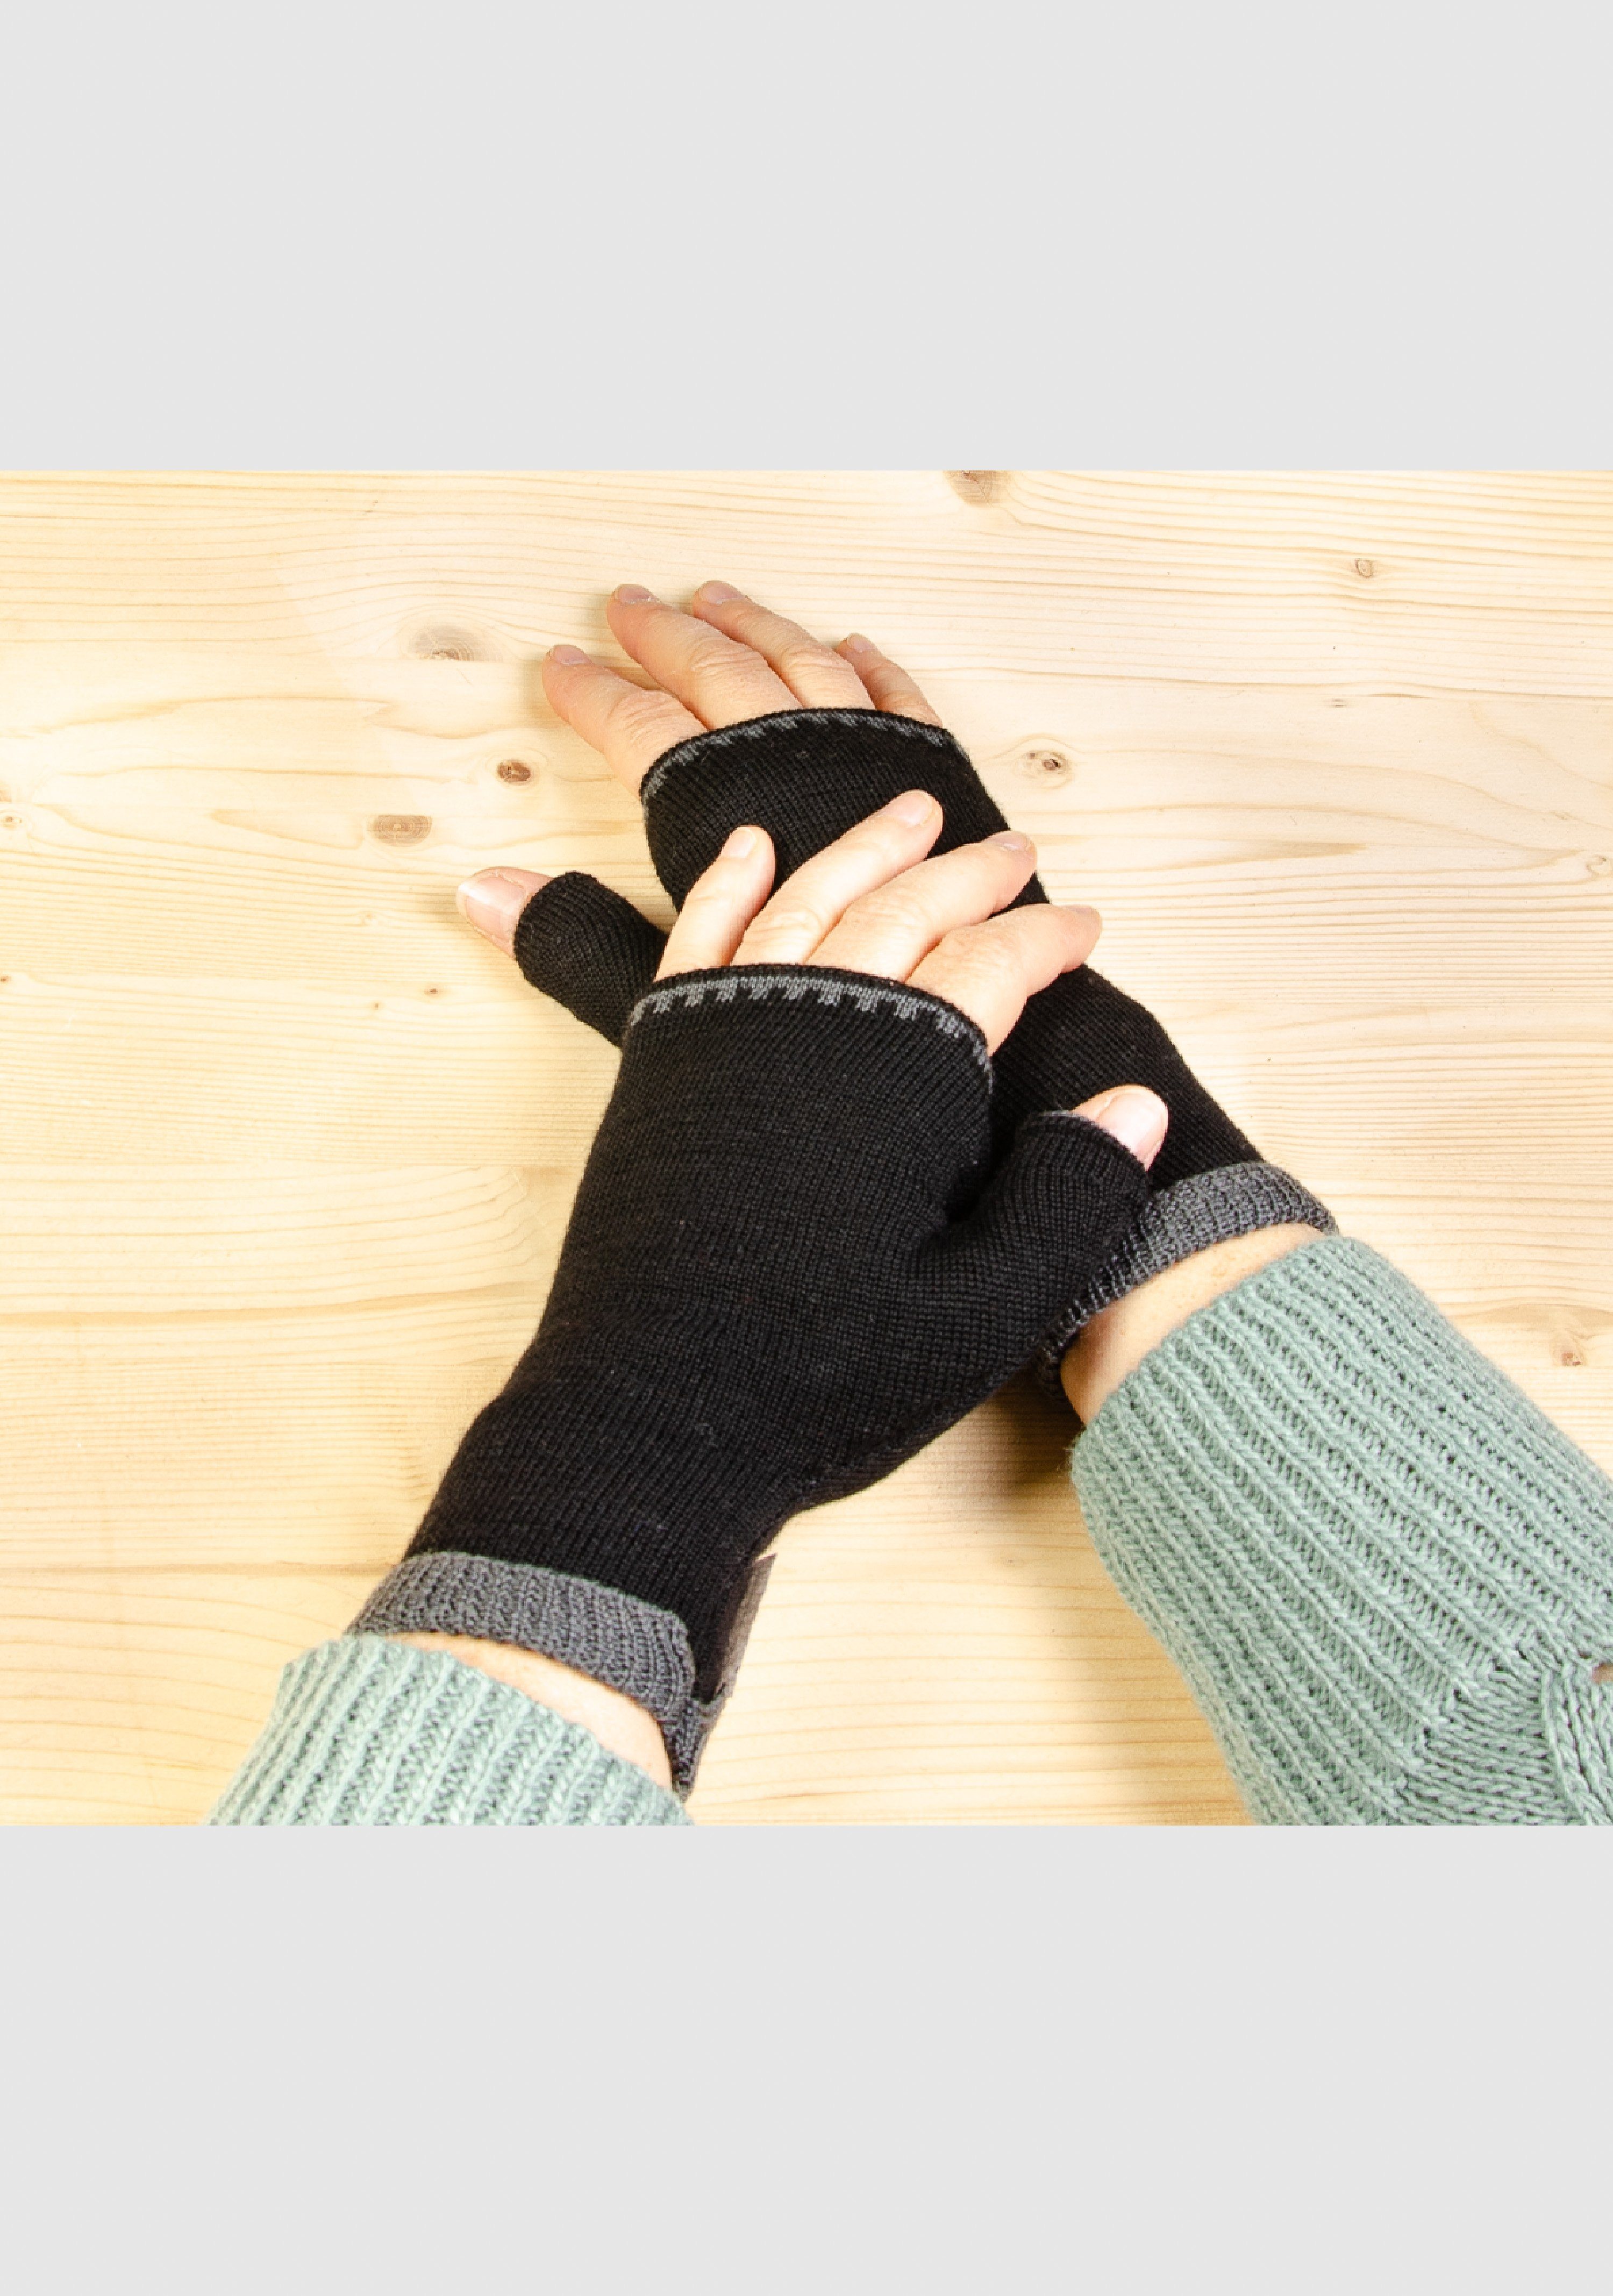 LANARTO slow fashion Strickhandschuhe Merino Handwärmer mit Daumen in schönen Farben schwarz